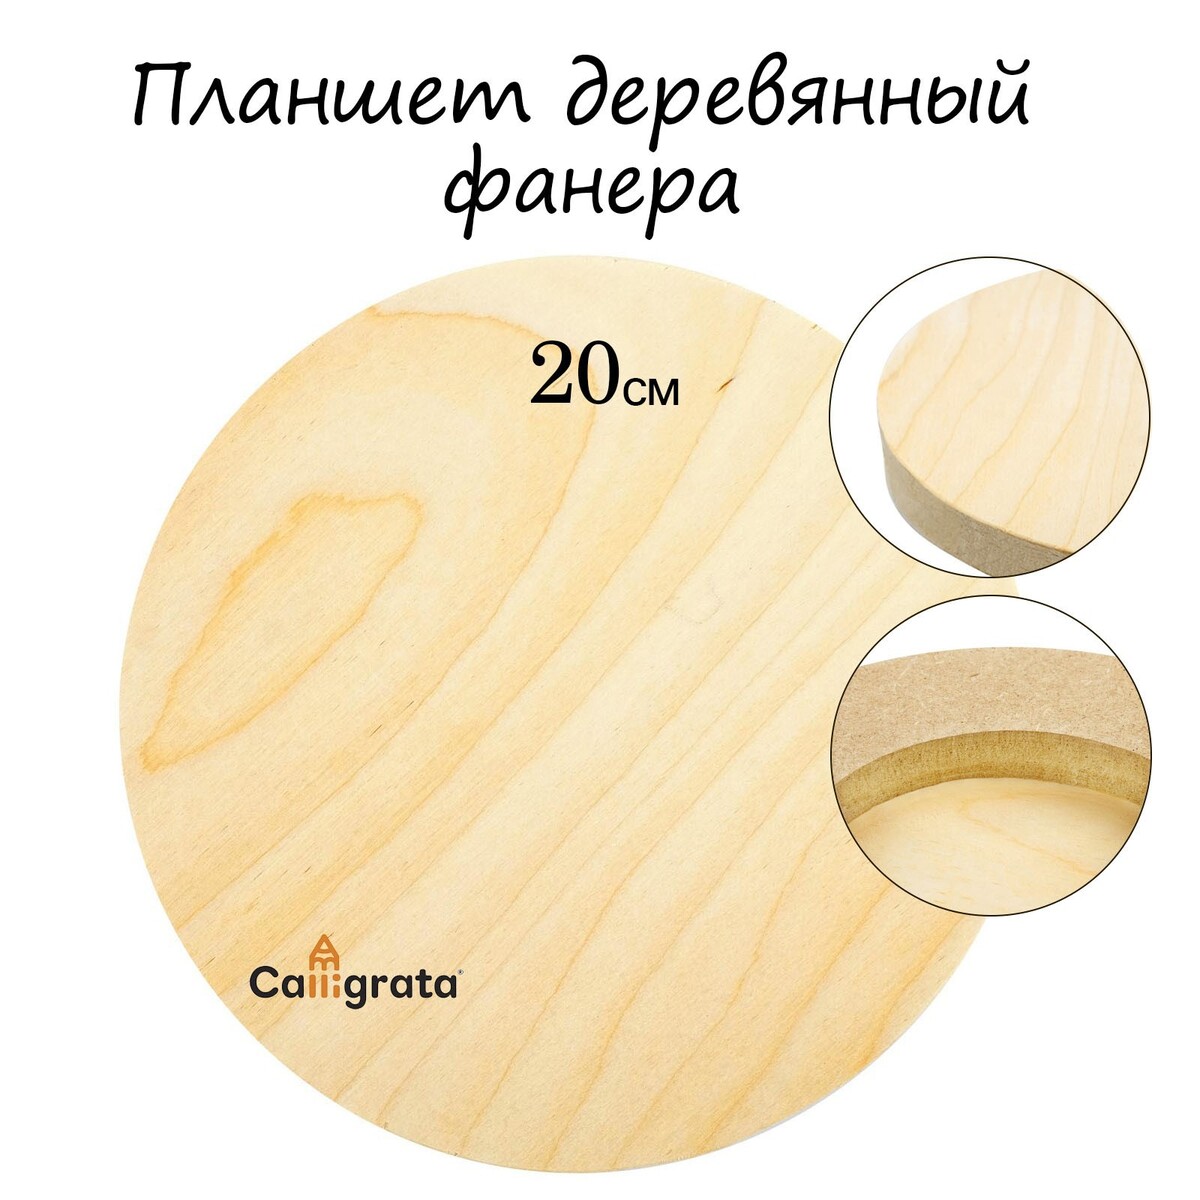 Планшет круглый деревянный фанера d-20 х 2 см, сосна, calligrata планшет деревянный 30 х 40 х 2 см двп